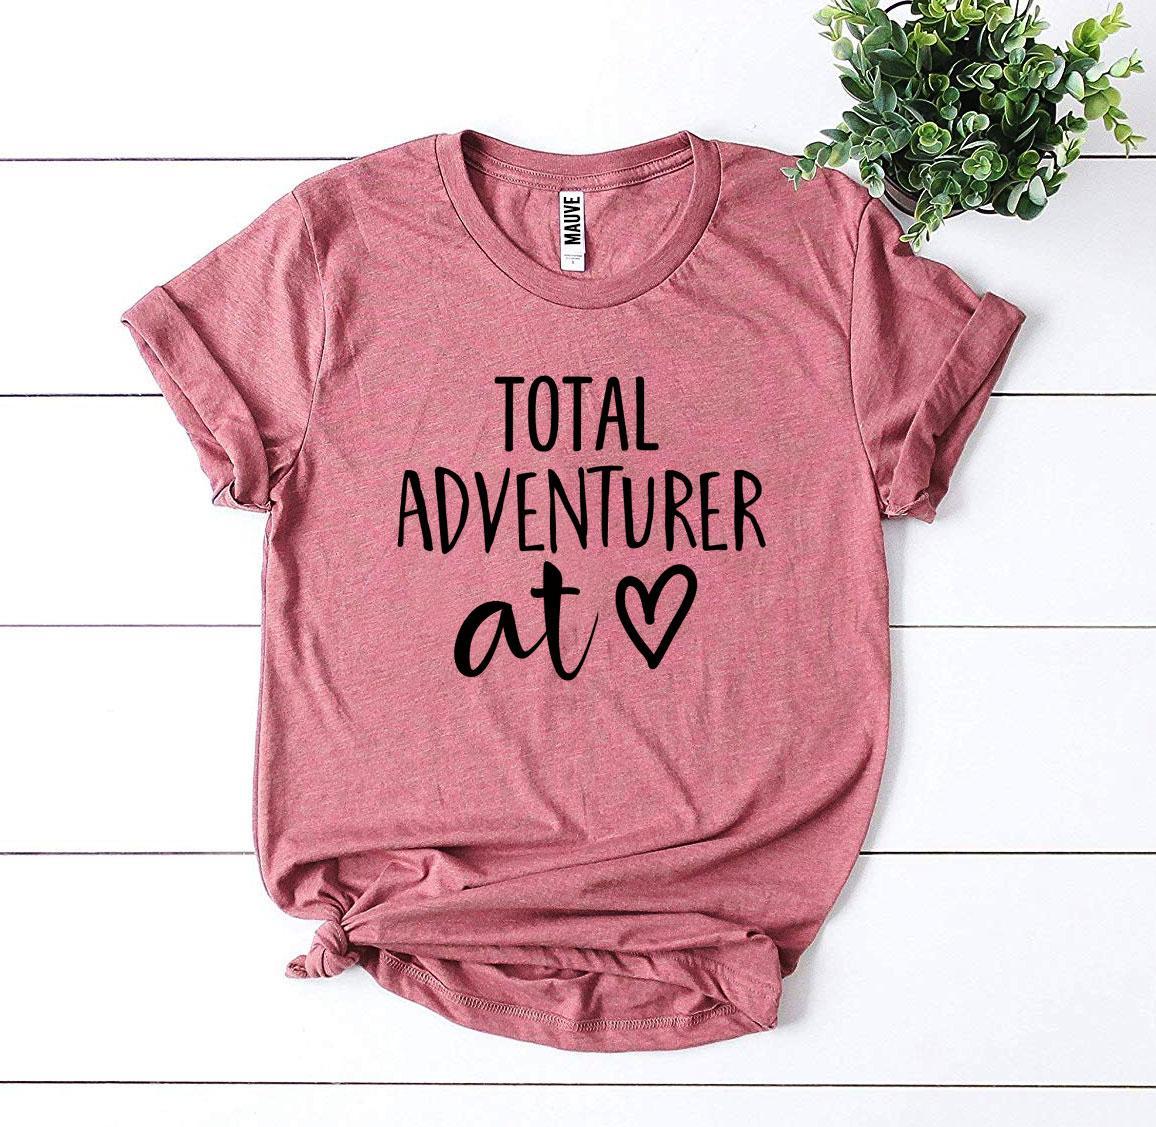 Total Adventurer At Heart T-shirt